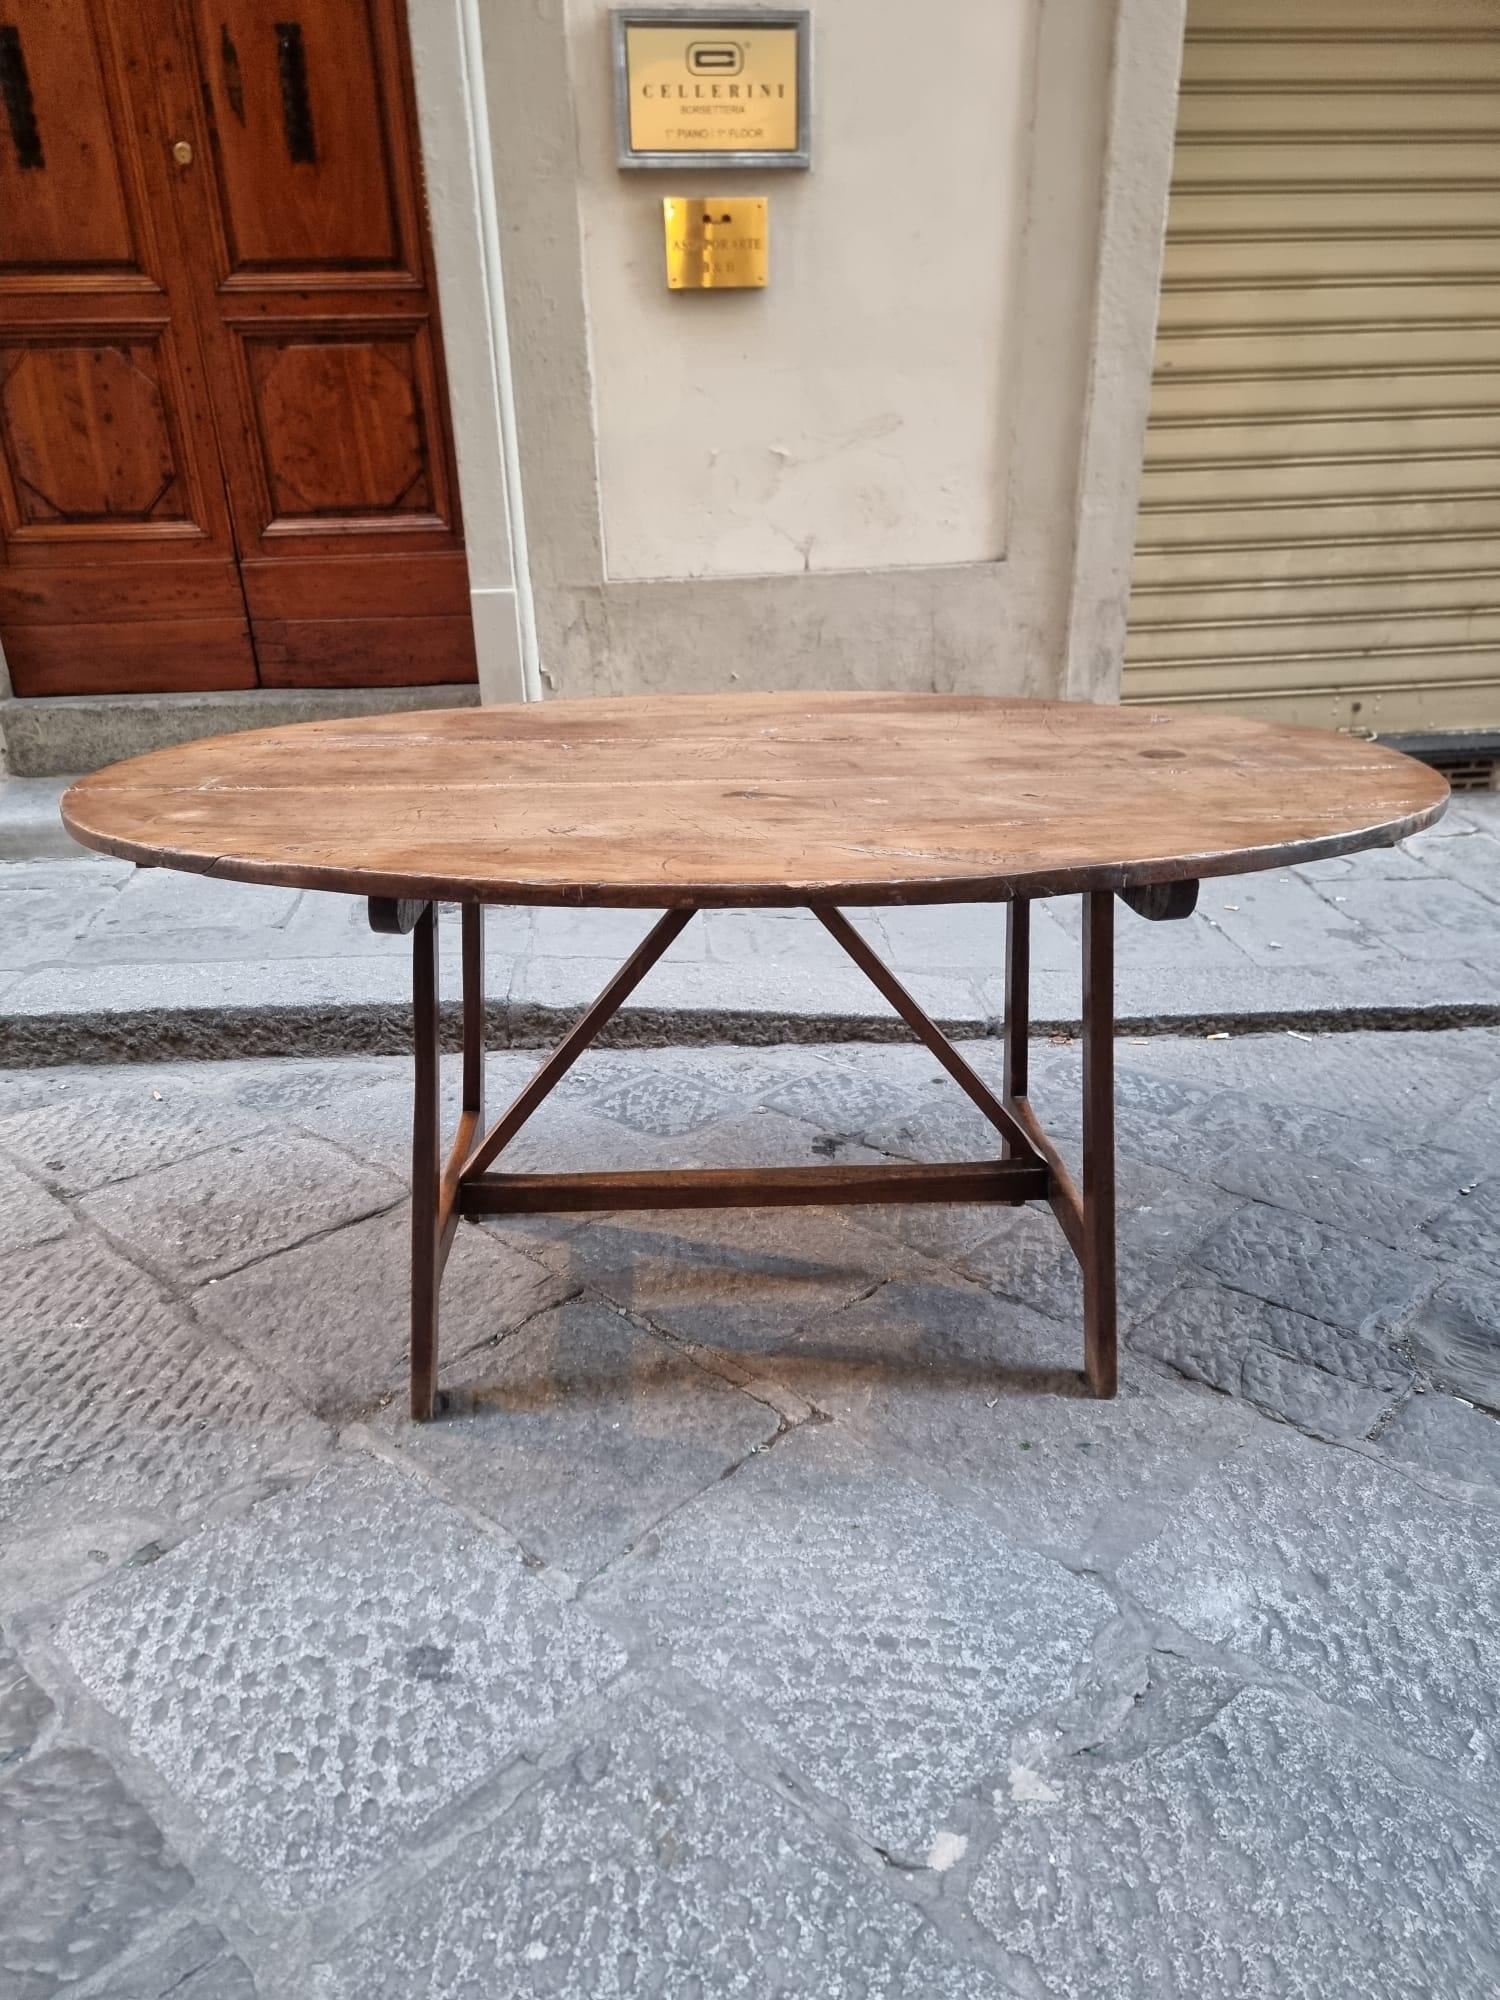 Table ovale en forme de pattes de chèvre, en bois de noyer, XVIIIe siècle. Italie centrale, Toscane.

Les extensions et les fers à repasser ne sont pas d'origine.

La table a besoin d'une restauration qui sera effectuée par nos restaurateurs